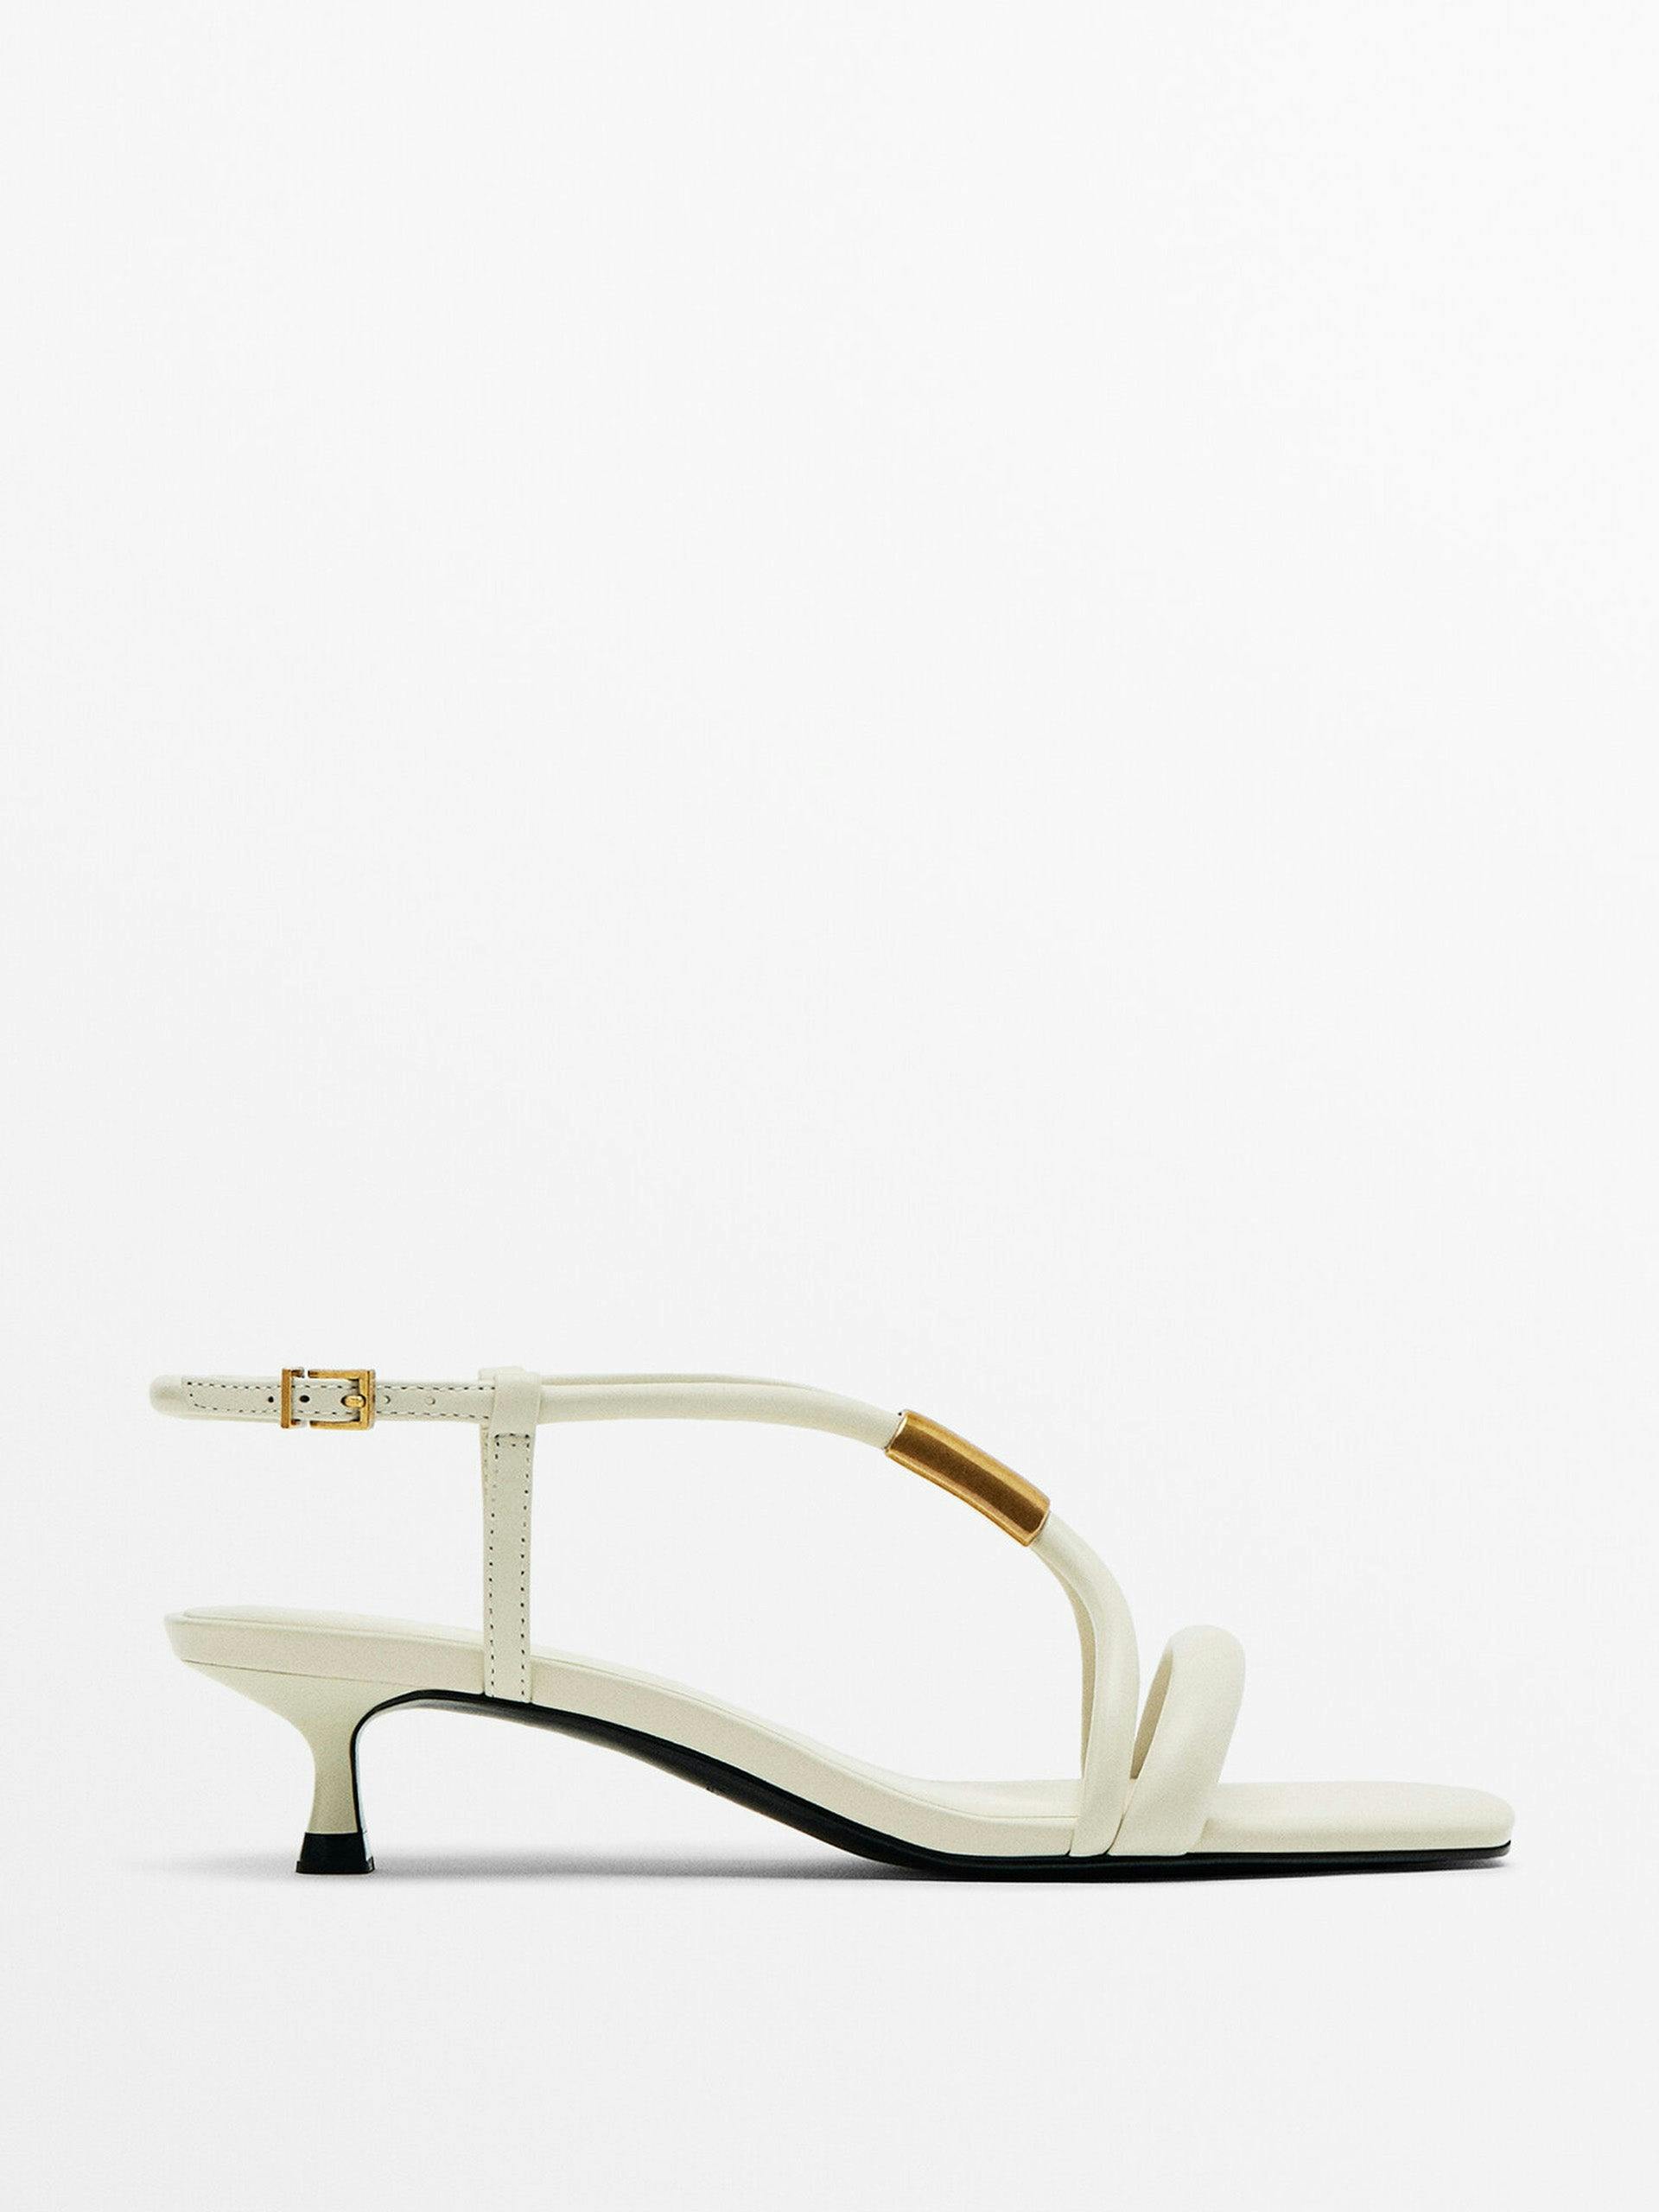 High heel sandals with metal piece